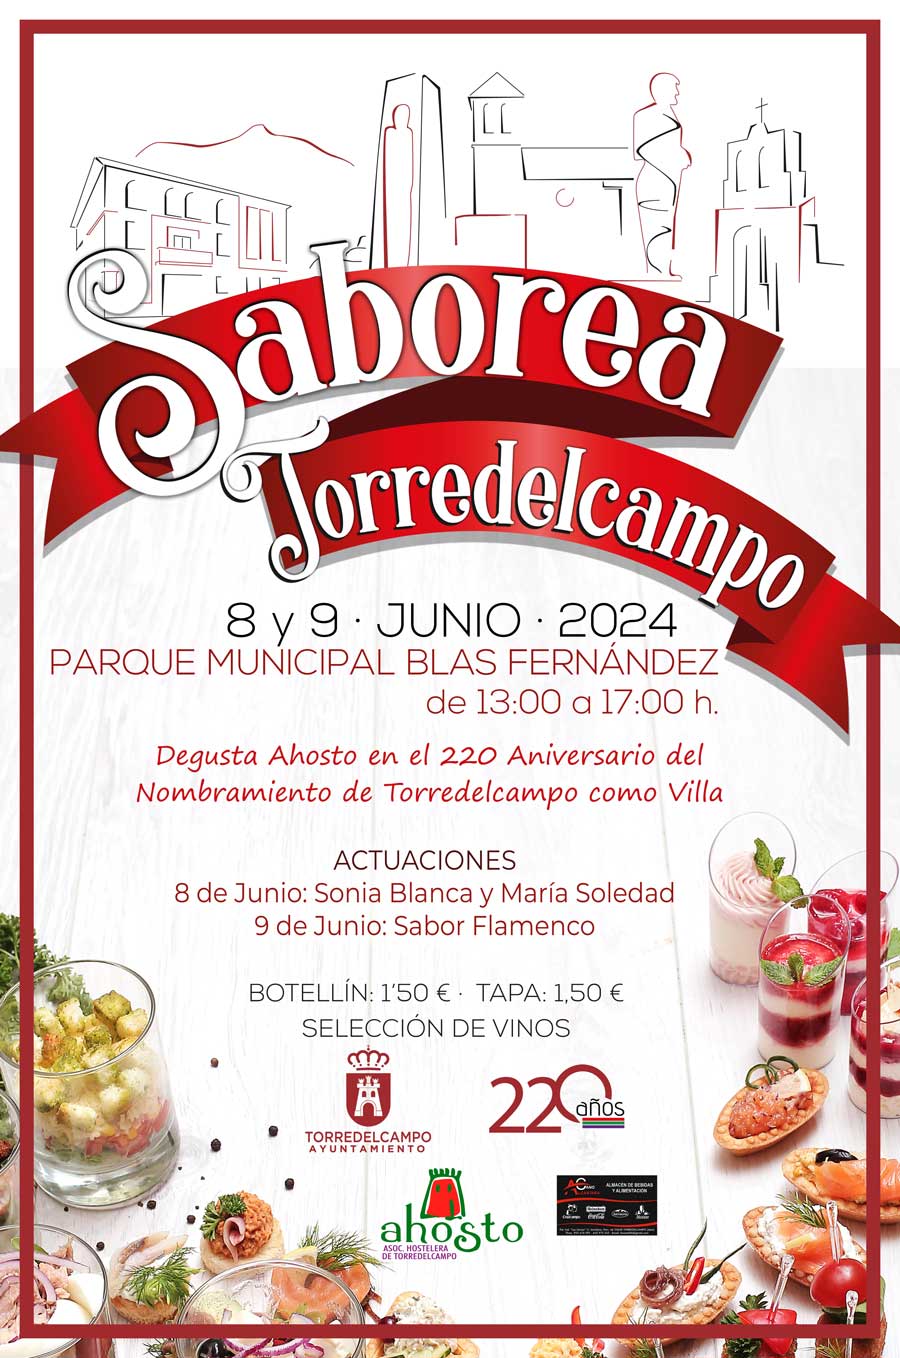 Saborea Torredelcampo